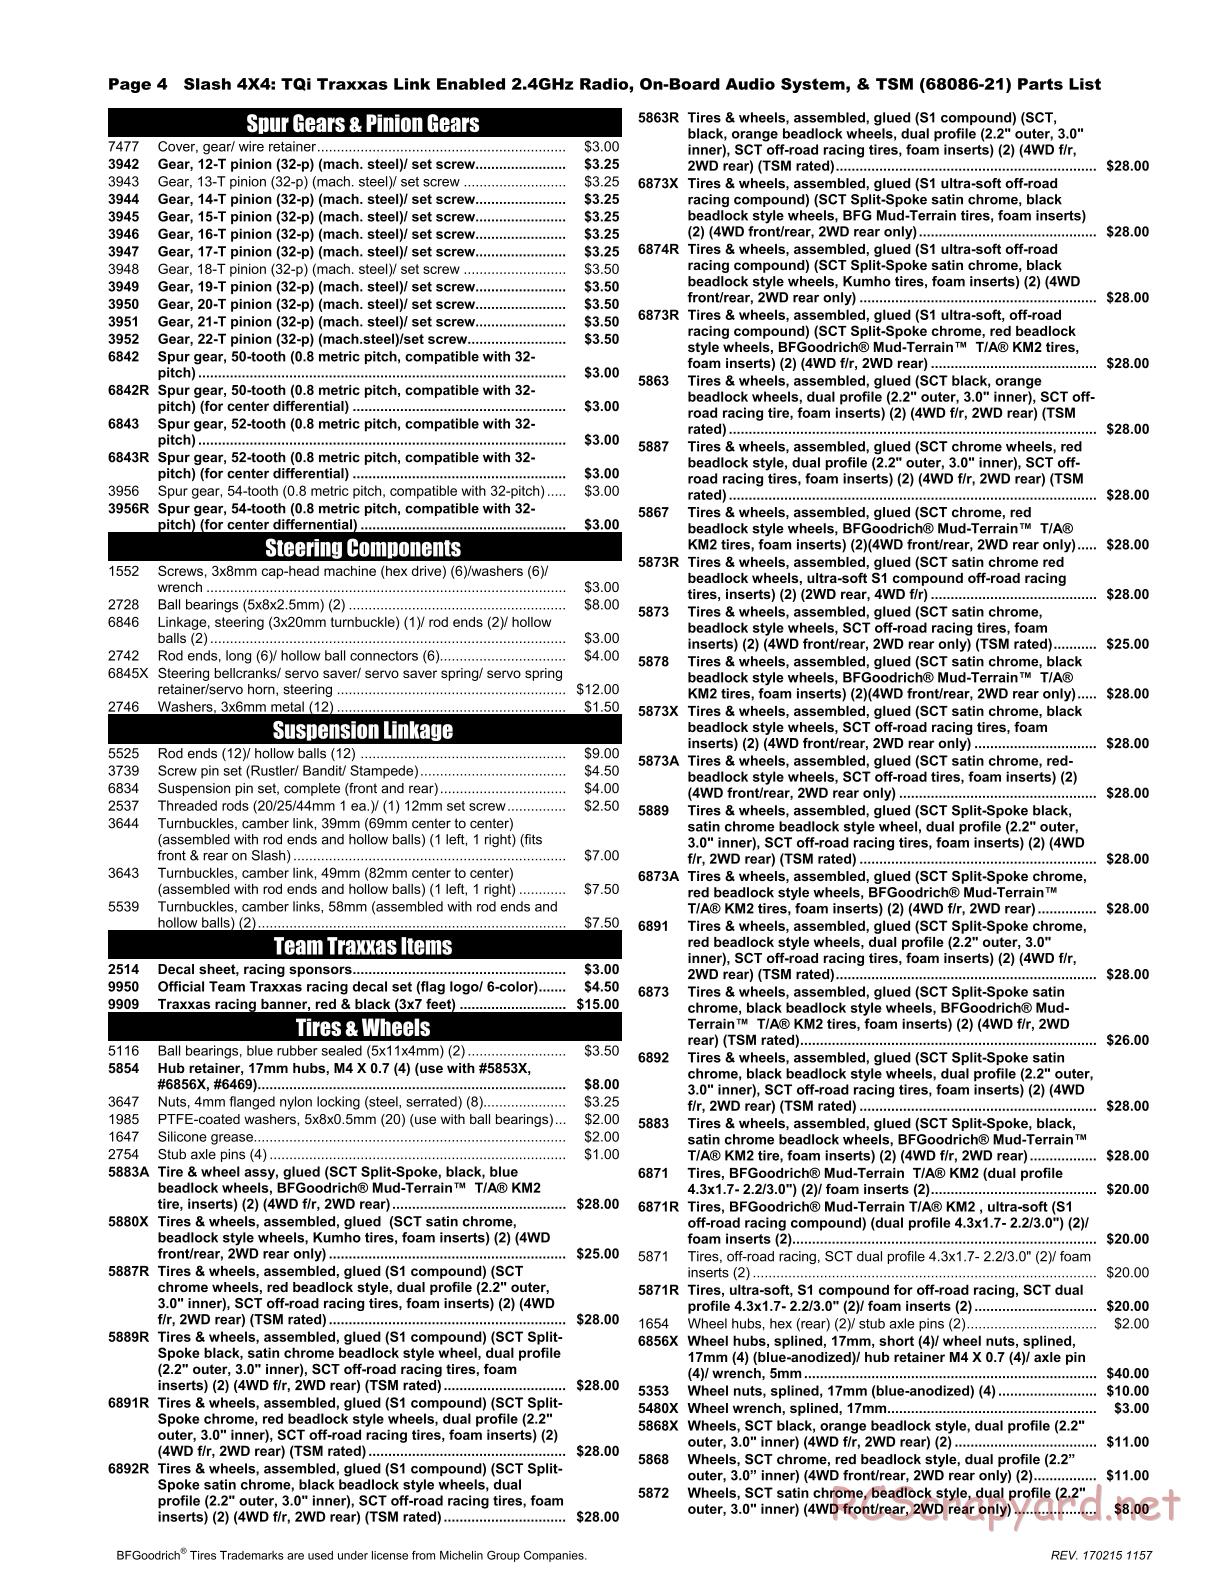 Traxxas - Slash 4x4 TSM OBA - Parts List - Page 4